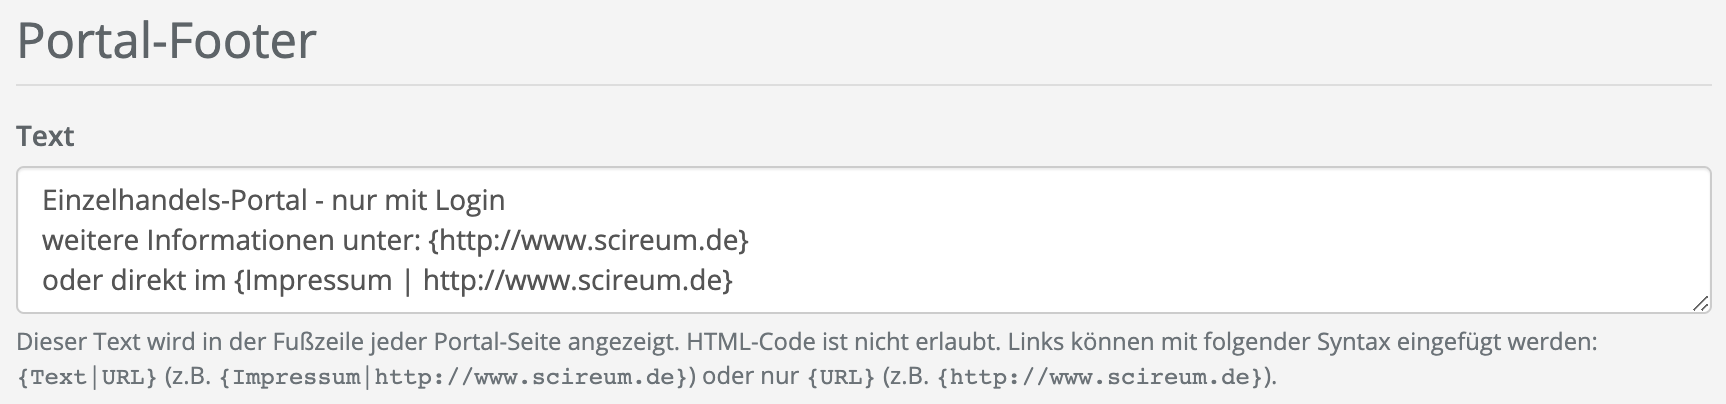 HTML5 - Abschnitt Portal-Footer